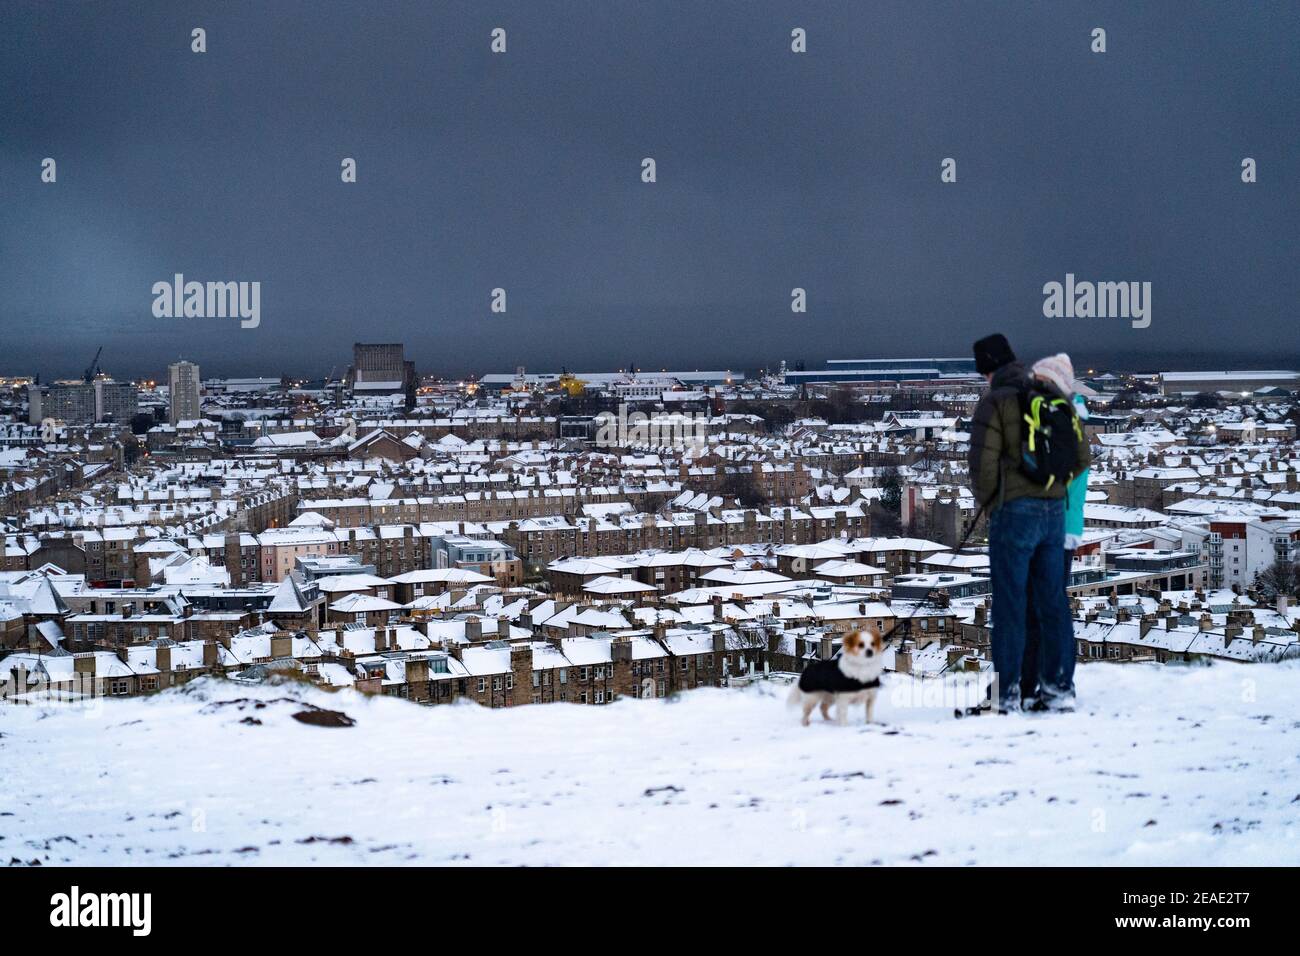 Edimburgo, Scozia, Regno Unito. 9 Feb 2021. Big Freeze continua nel Regno Unito con Storm Darcy portando diversi centimetri di neve a Edimburgo durante la notte. PIC; tetti innevati a Leith vista da Calton Hill. Iain Masterton/Alamy Notizie dal vivo Foto Stock